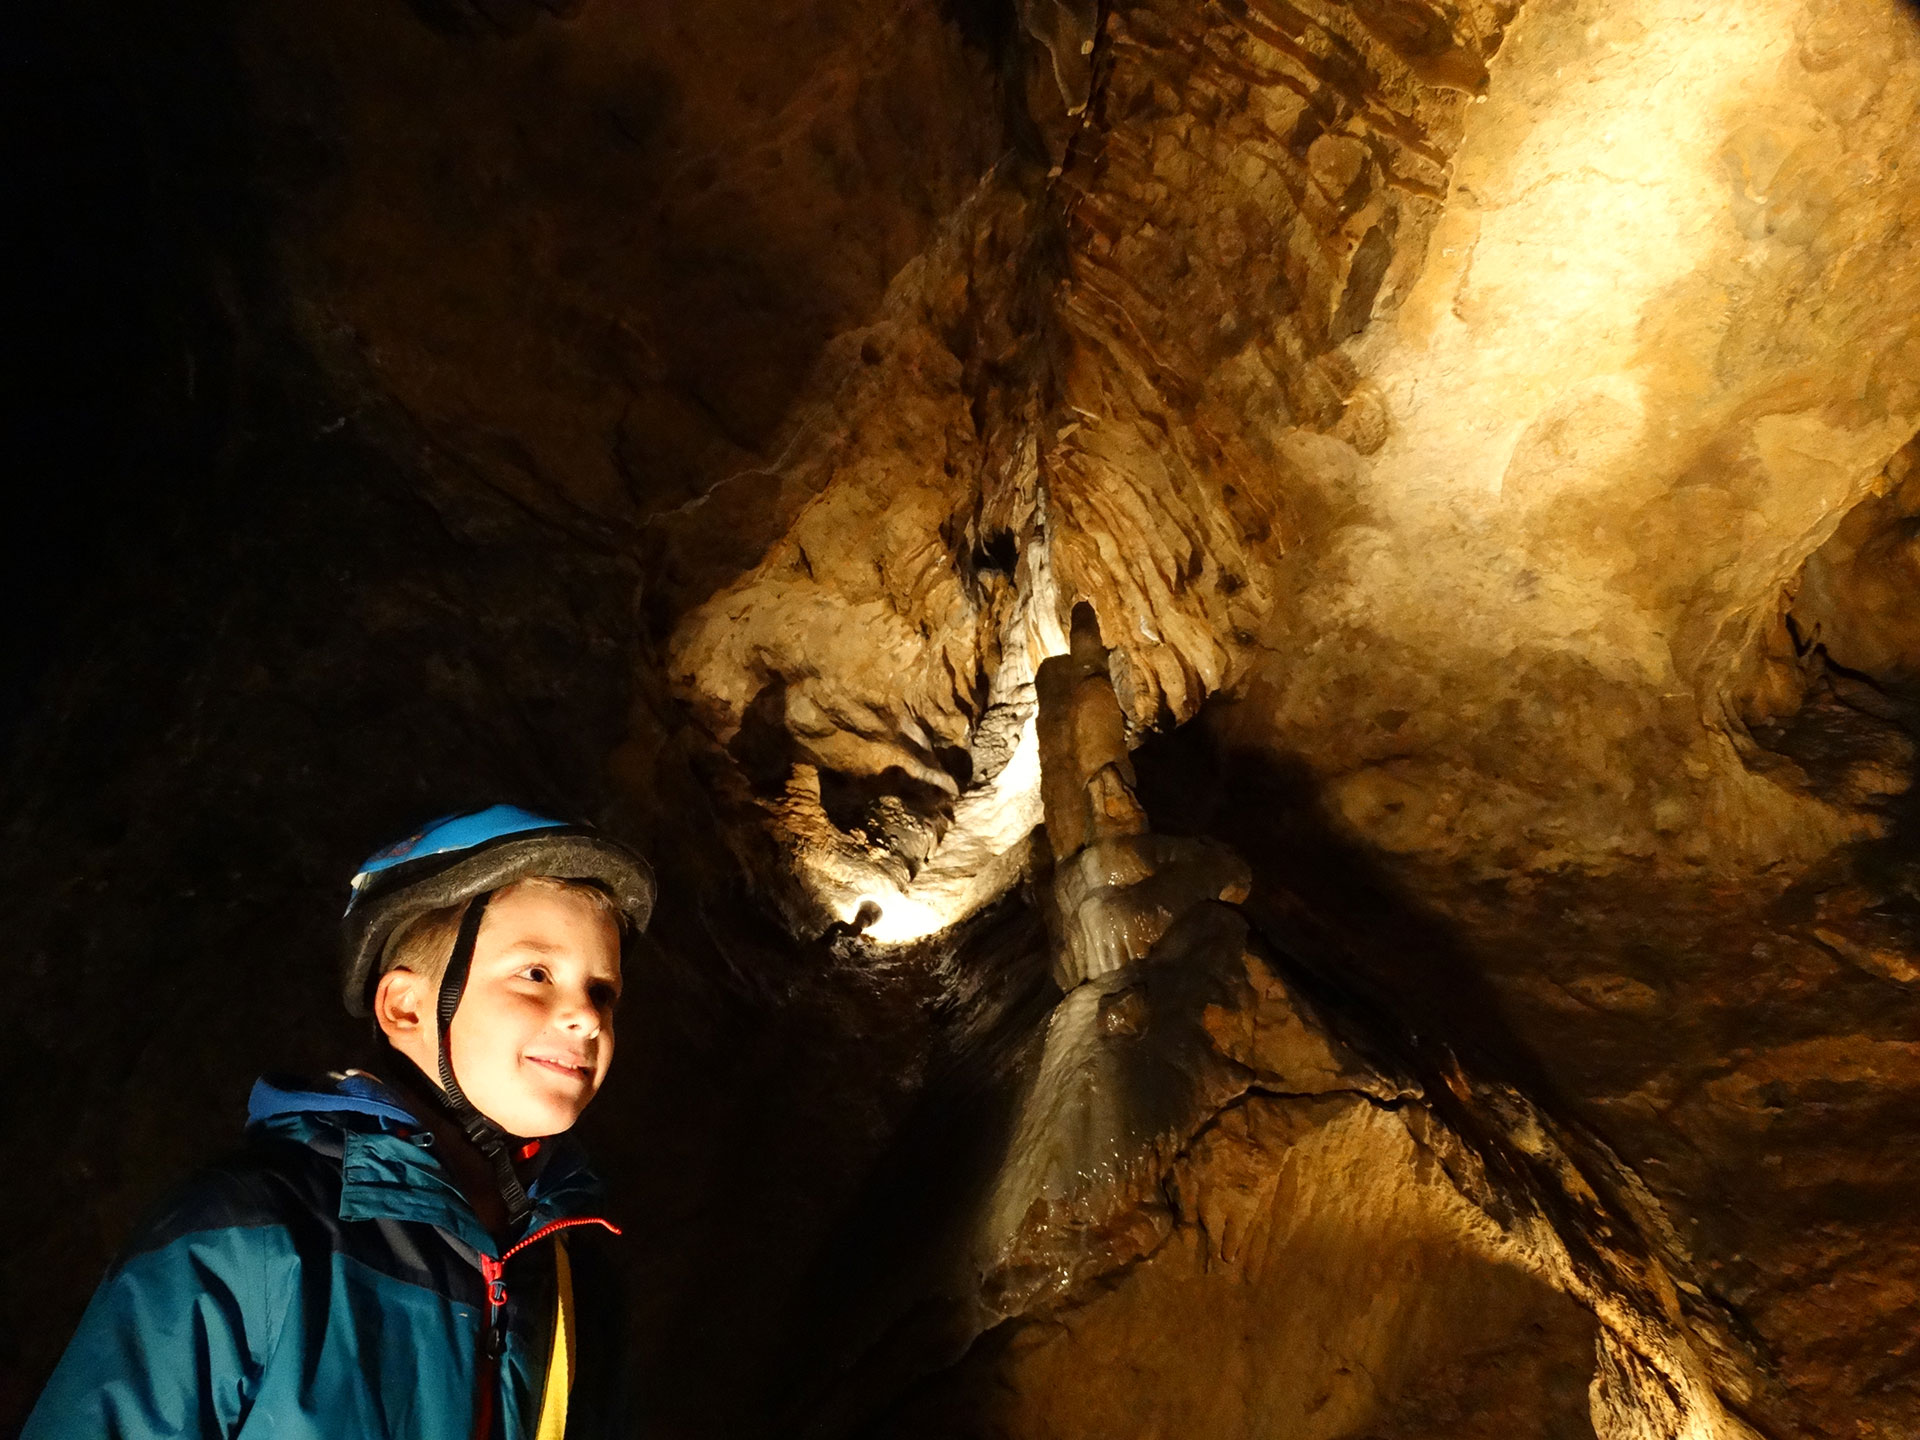 Discover the Grotte de Comblain in Comblain-au-Pont